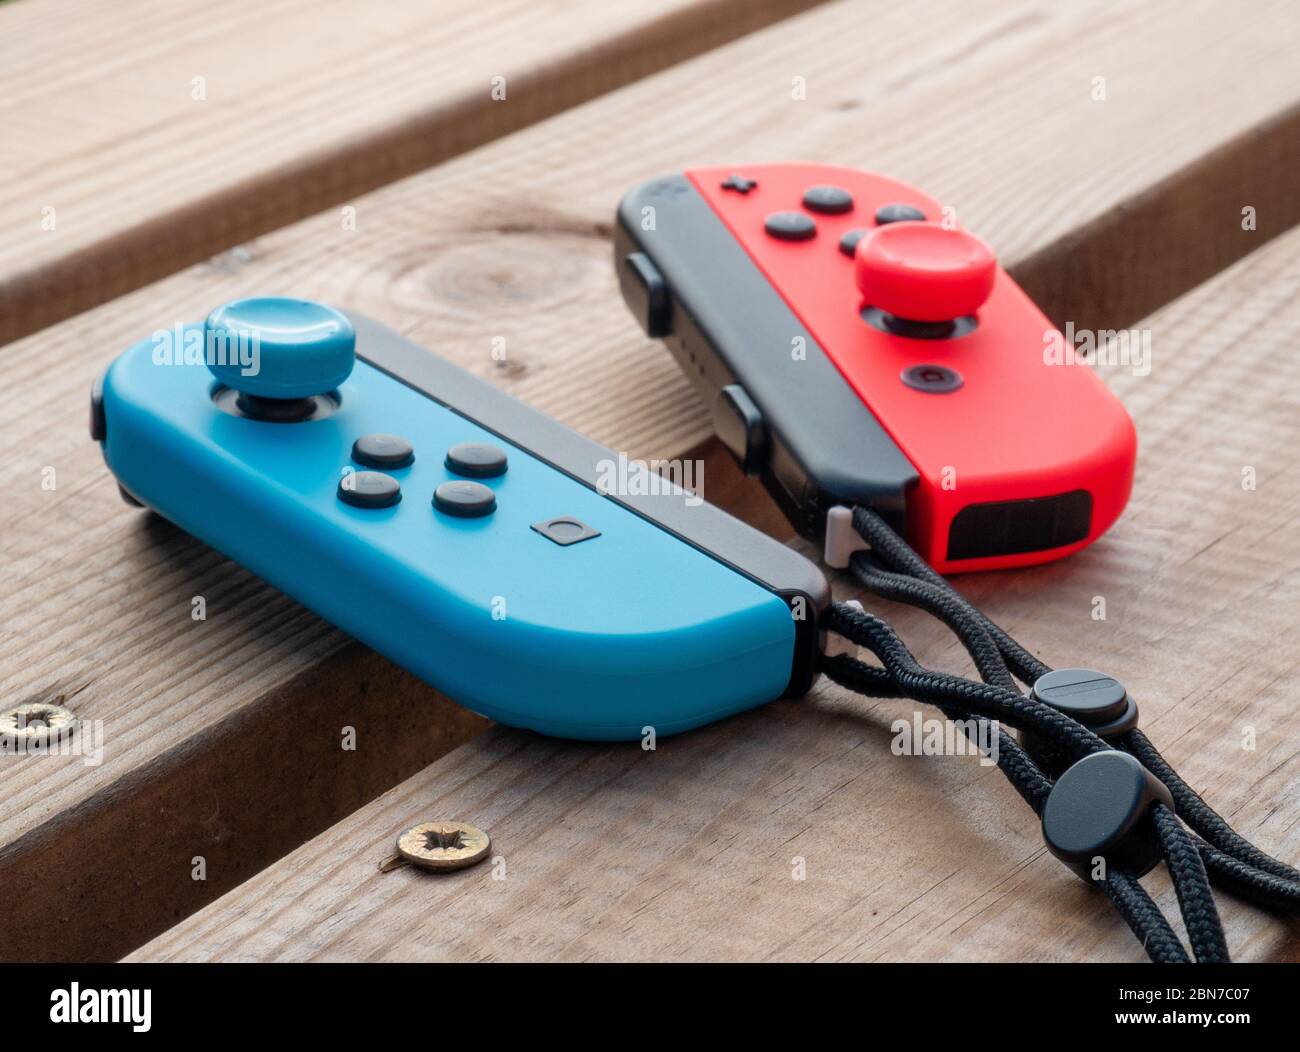 Mai 2020, UK: Nintendo Switch Joy con Controller rot und blau Neon im Freien auf Holztisch Stockfoto